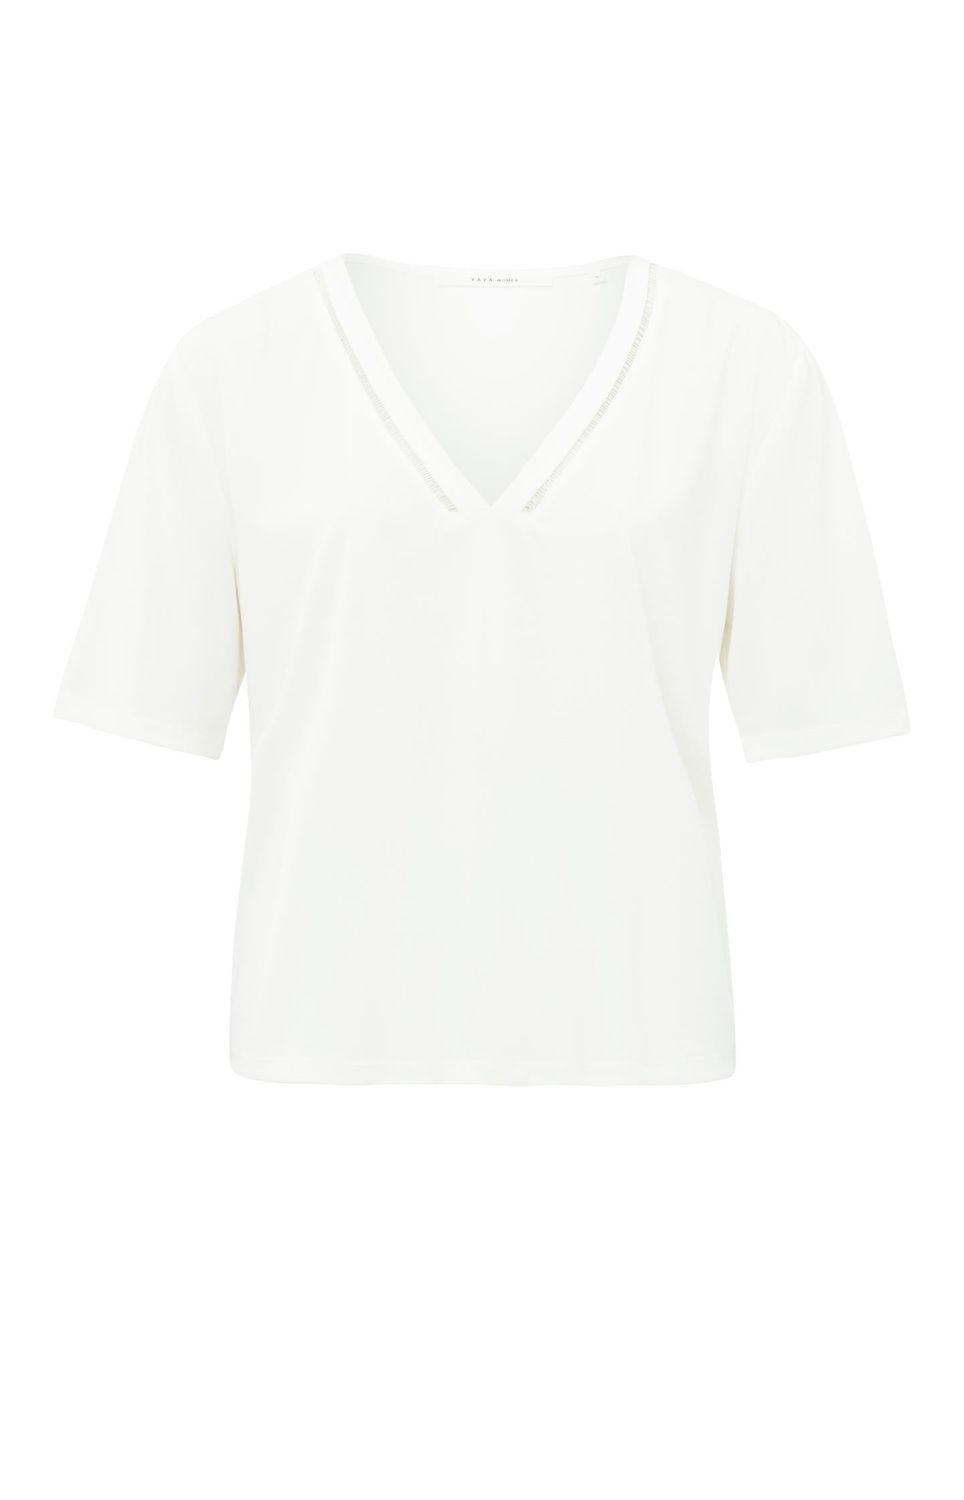 YAYA Shirt V-Neck / 01-719051-405 OFF WHITE